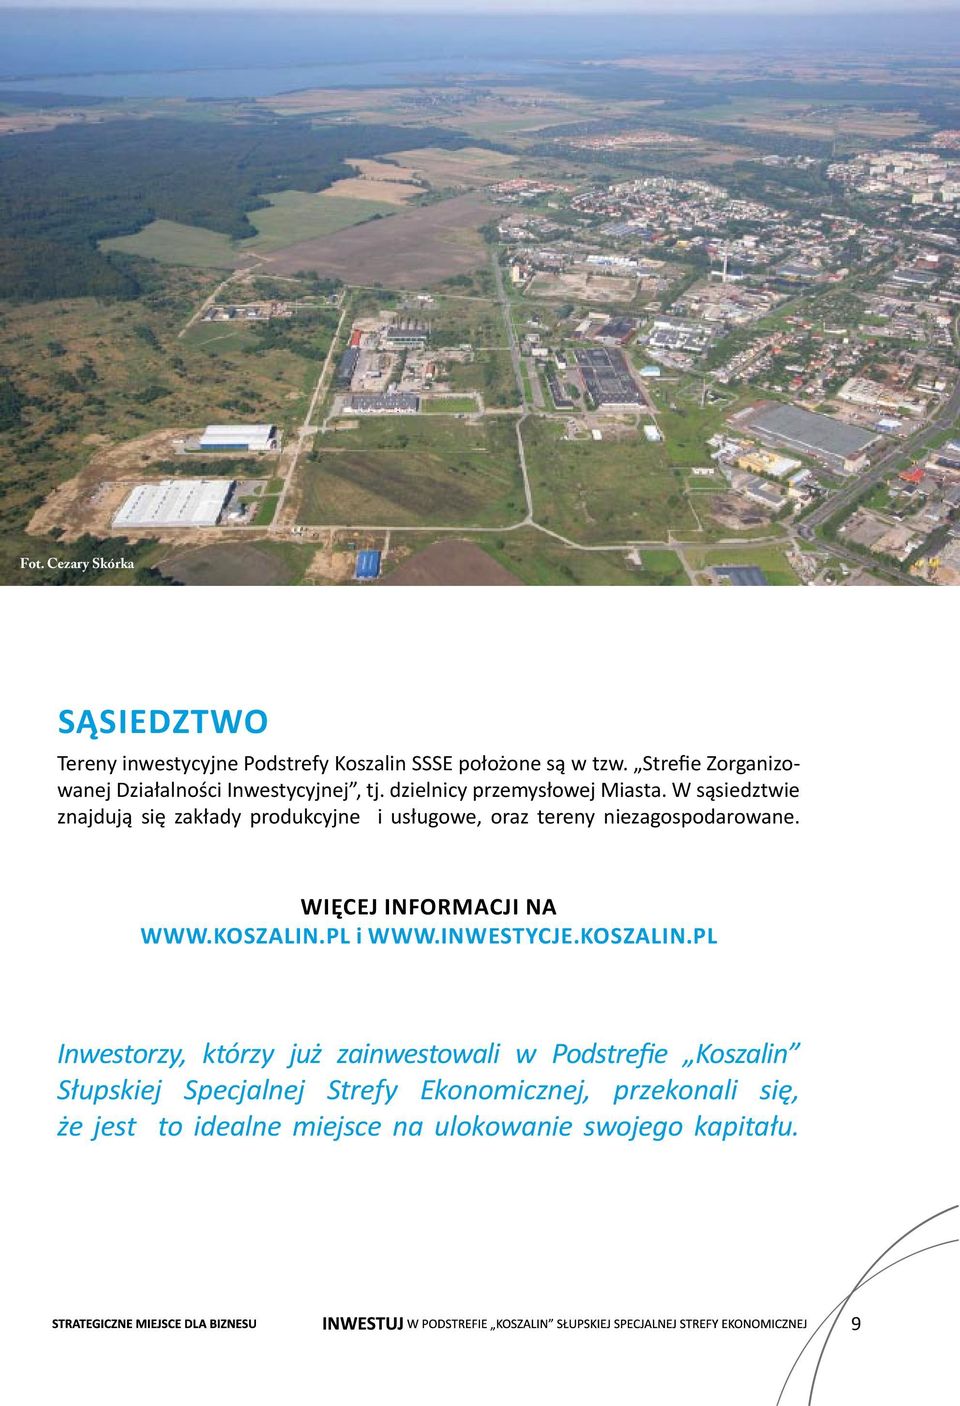 W sąsiedztwie znajdują się zakłady produkcyjne i usługowe, oraz tereny niezagospodarowane. Więcej informacji na www.koszalin.